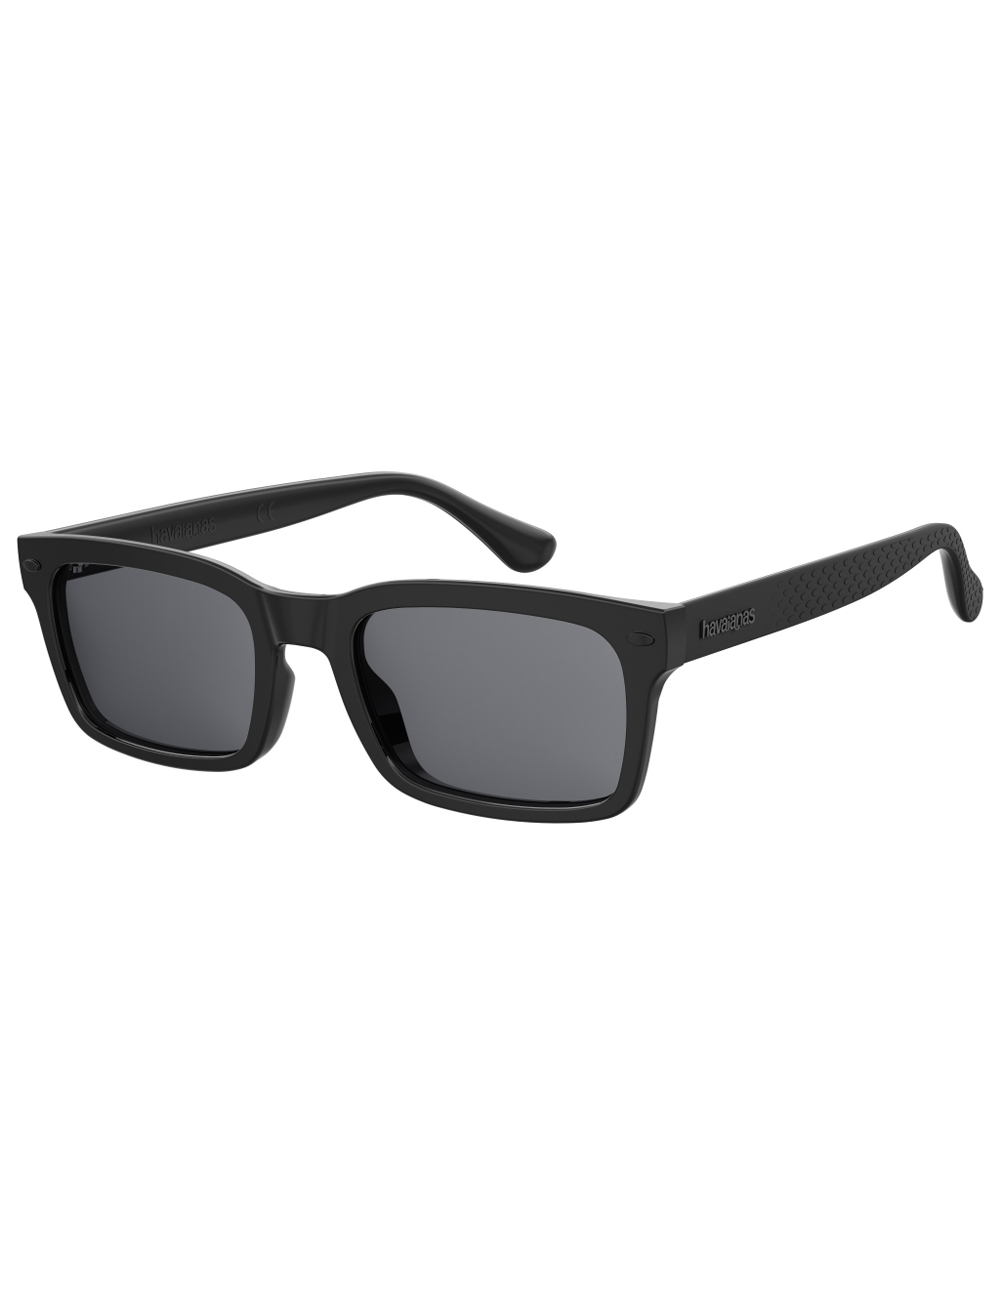 фото Солнцезащитные очки унисекс havaianas caetano черные